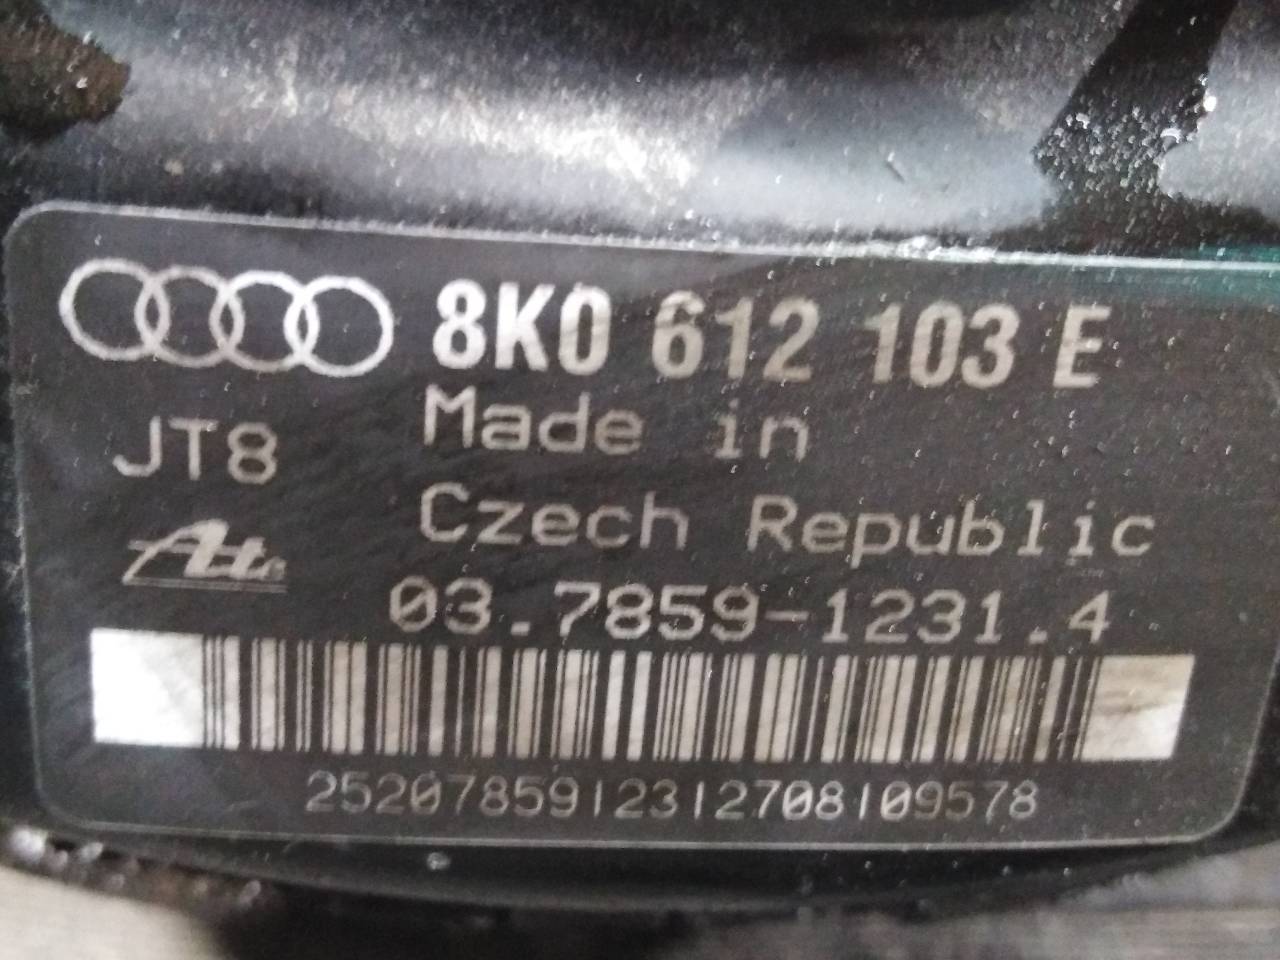 AUDI A4 B8/8K (2011-2016) Вакуумный усилитель тормозов 8K0612103E, P3-B9-24-3 24485982